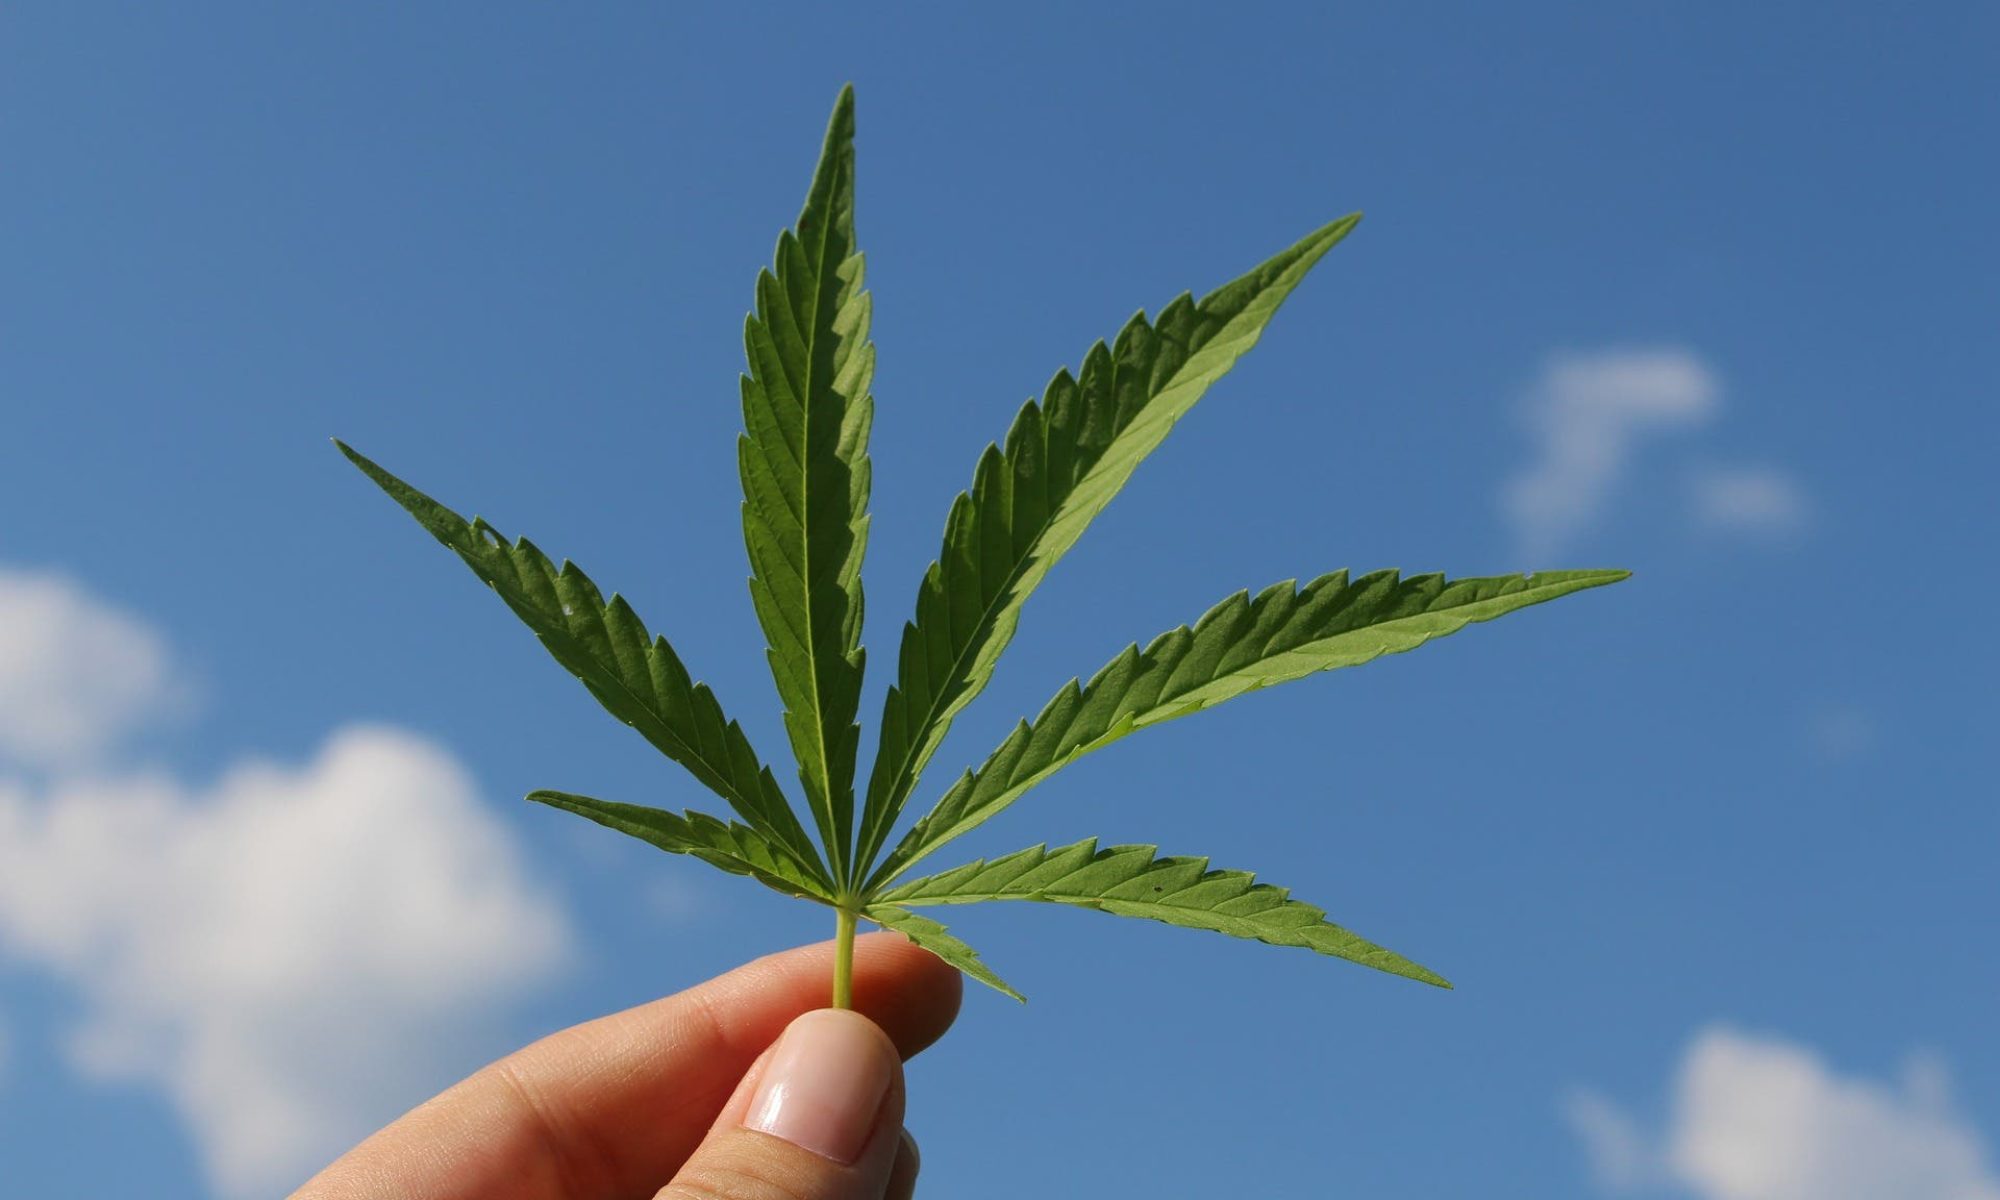 Regular Cannabis Seeds